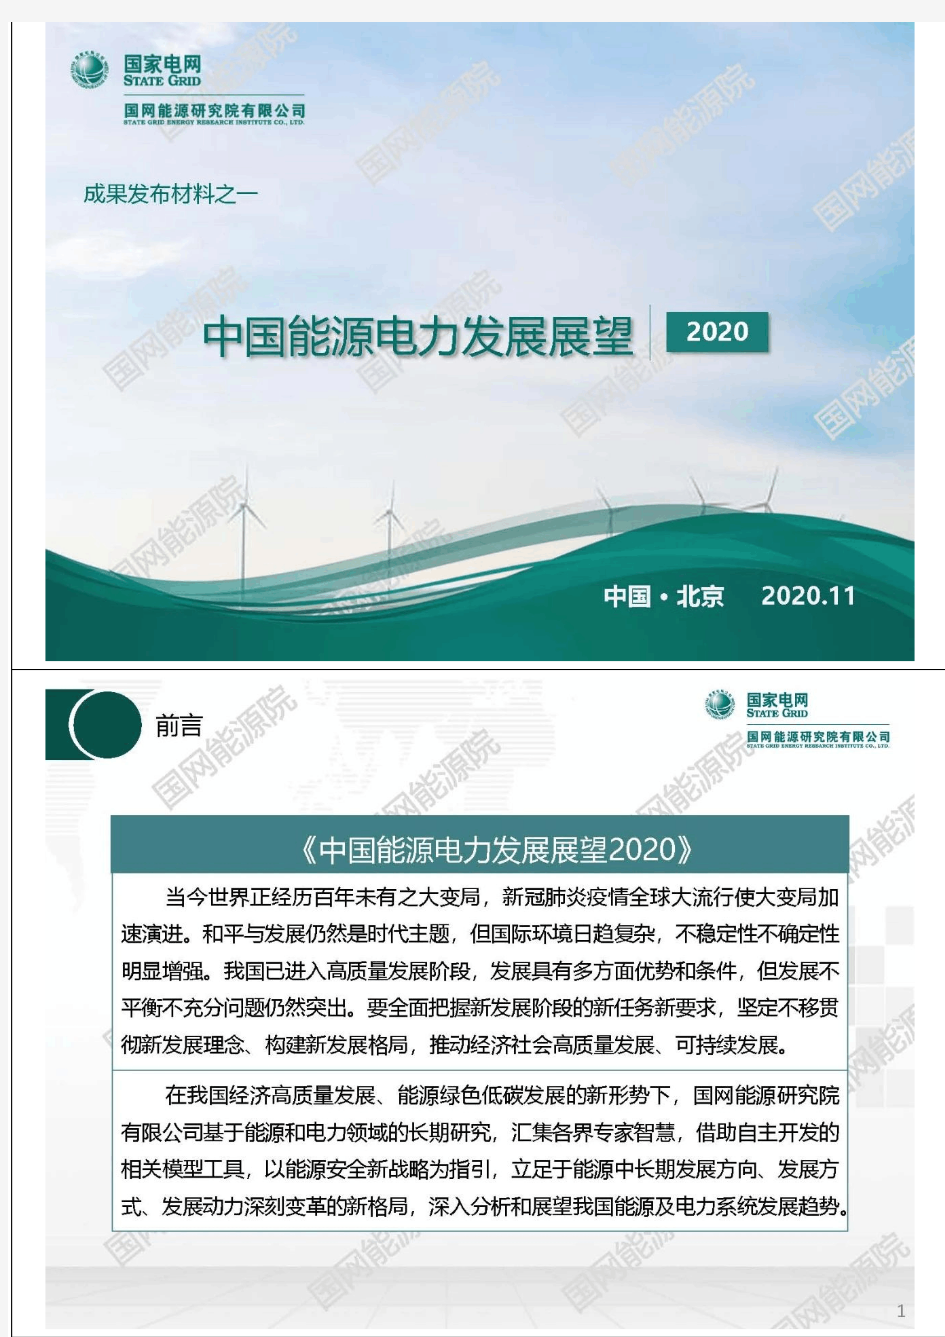 中国能源电力发展展望2020